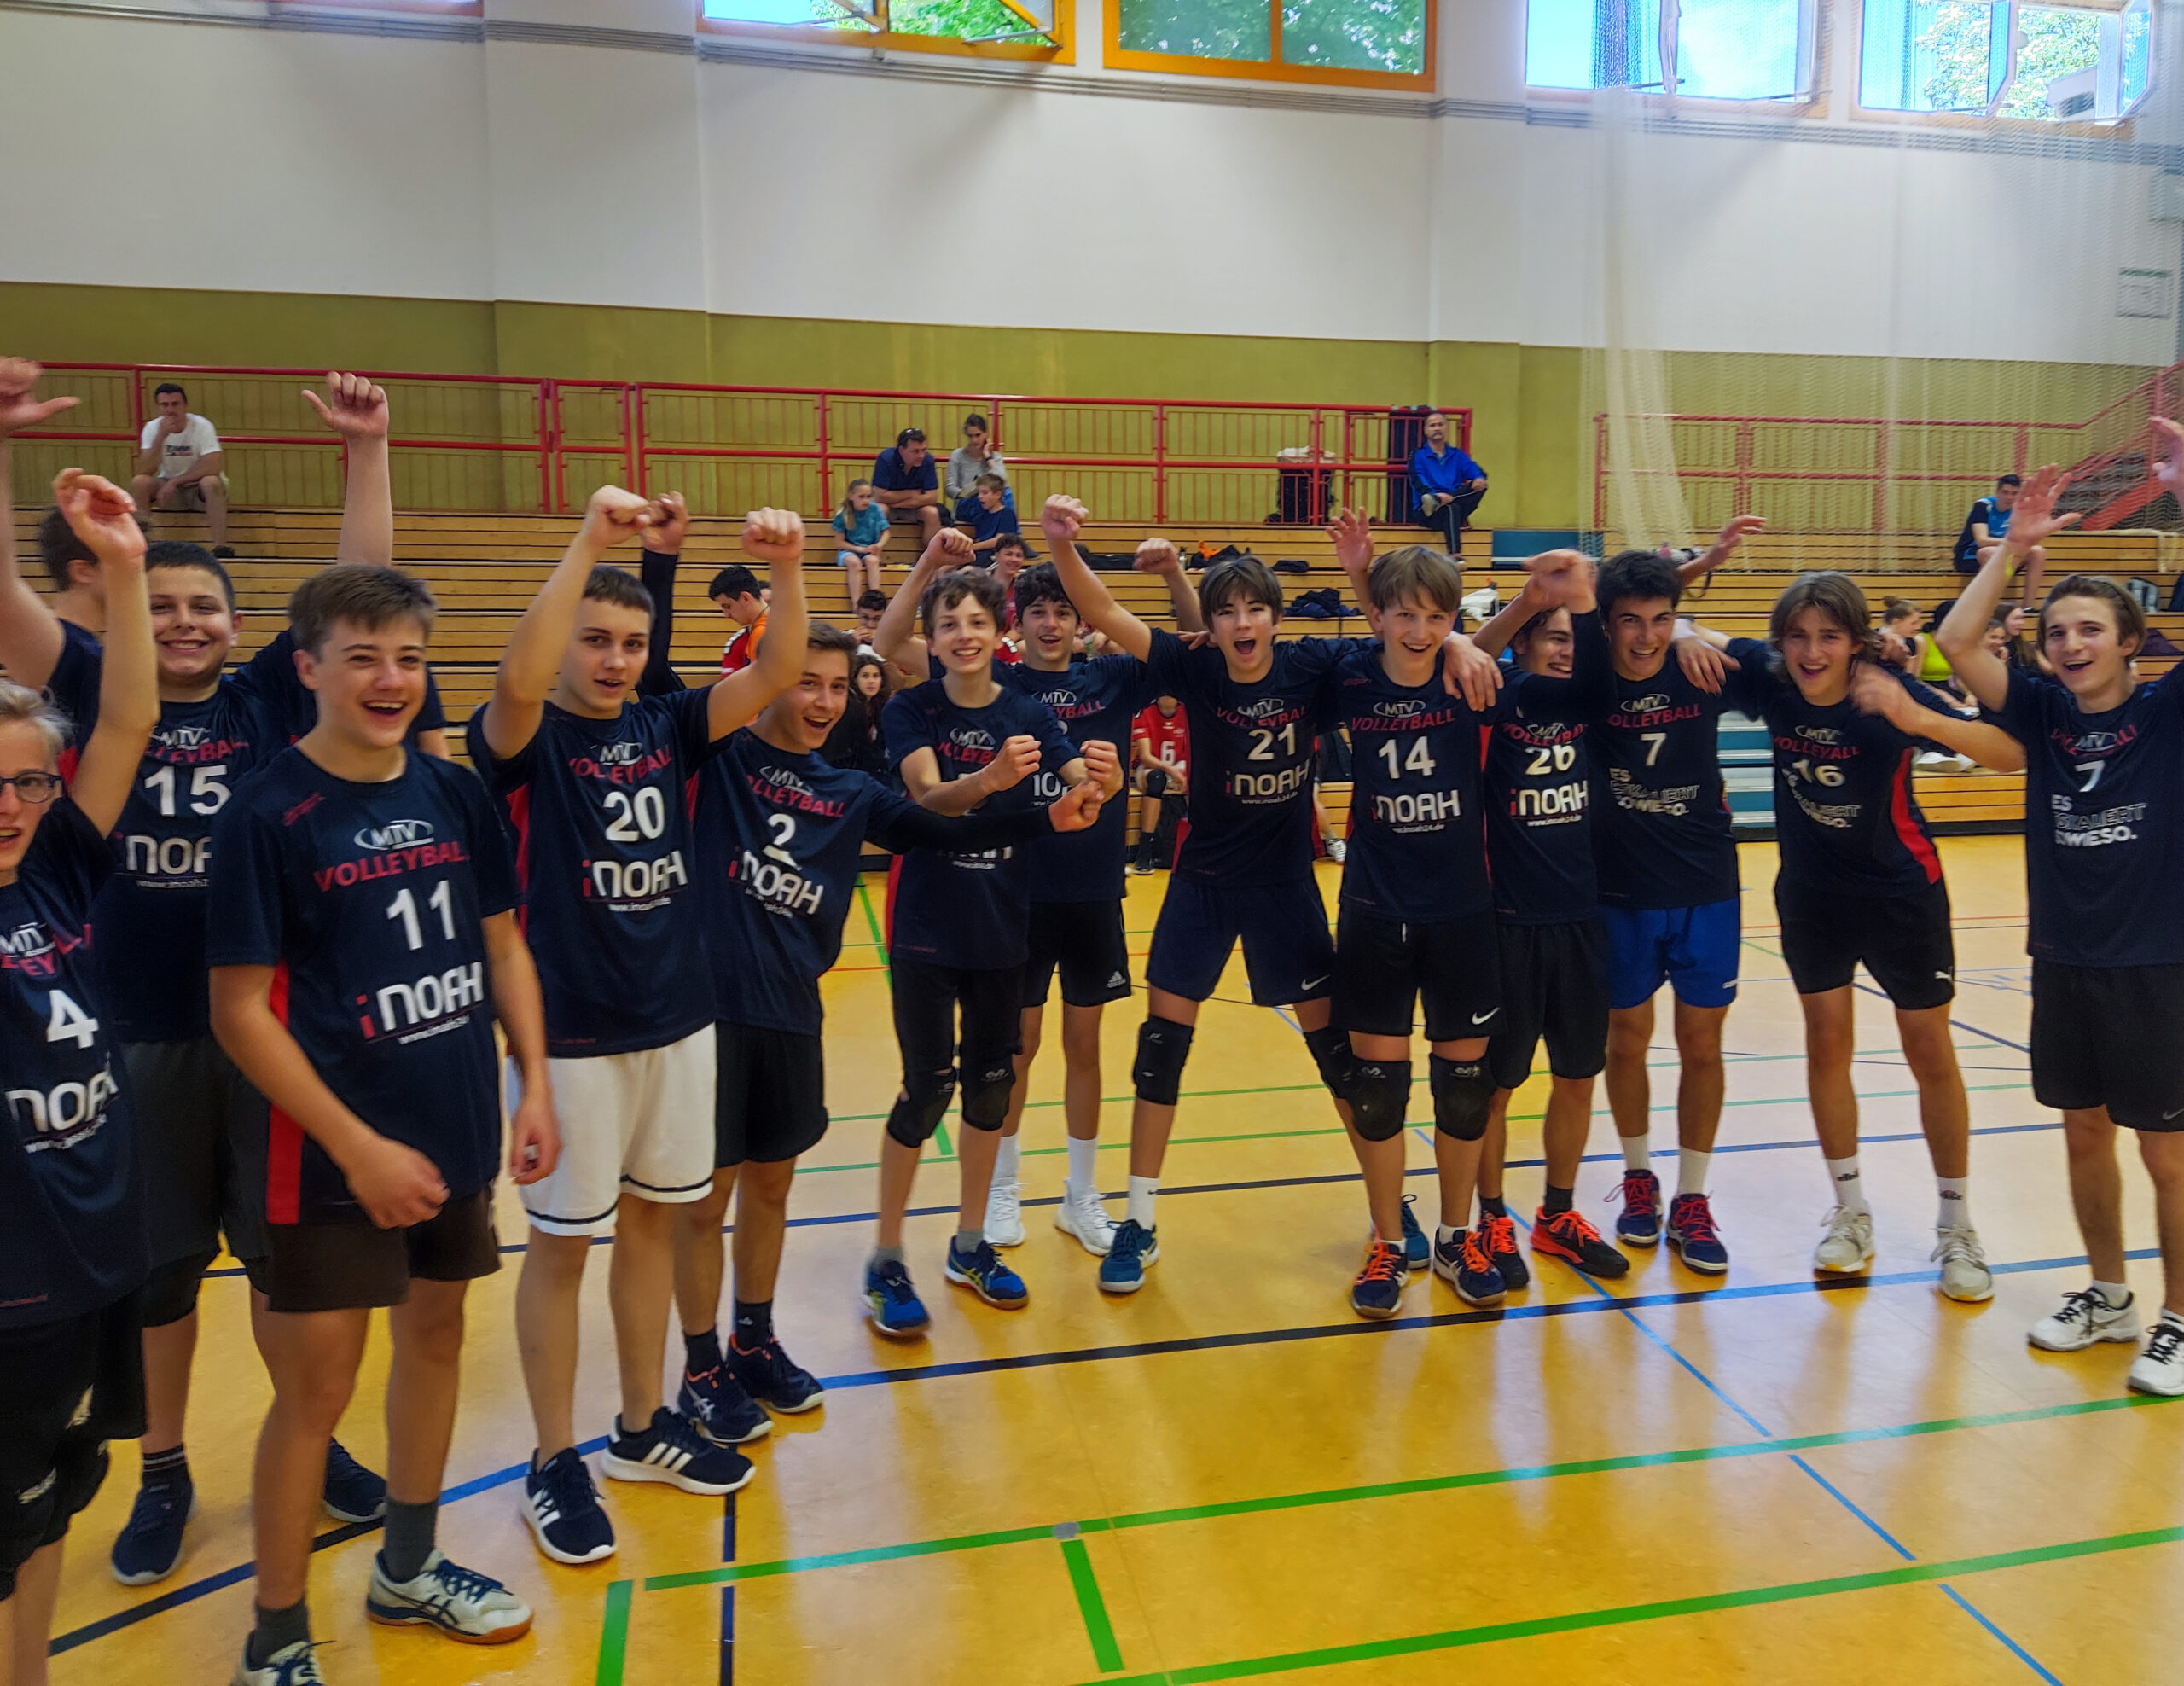 https://www.volleyball-rosenheim.de/wp-content/uploads/2022/05/U18_Turnier_Markt_Schwaben2-scaled.jpg